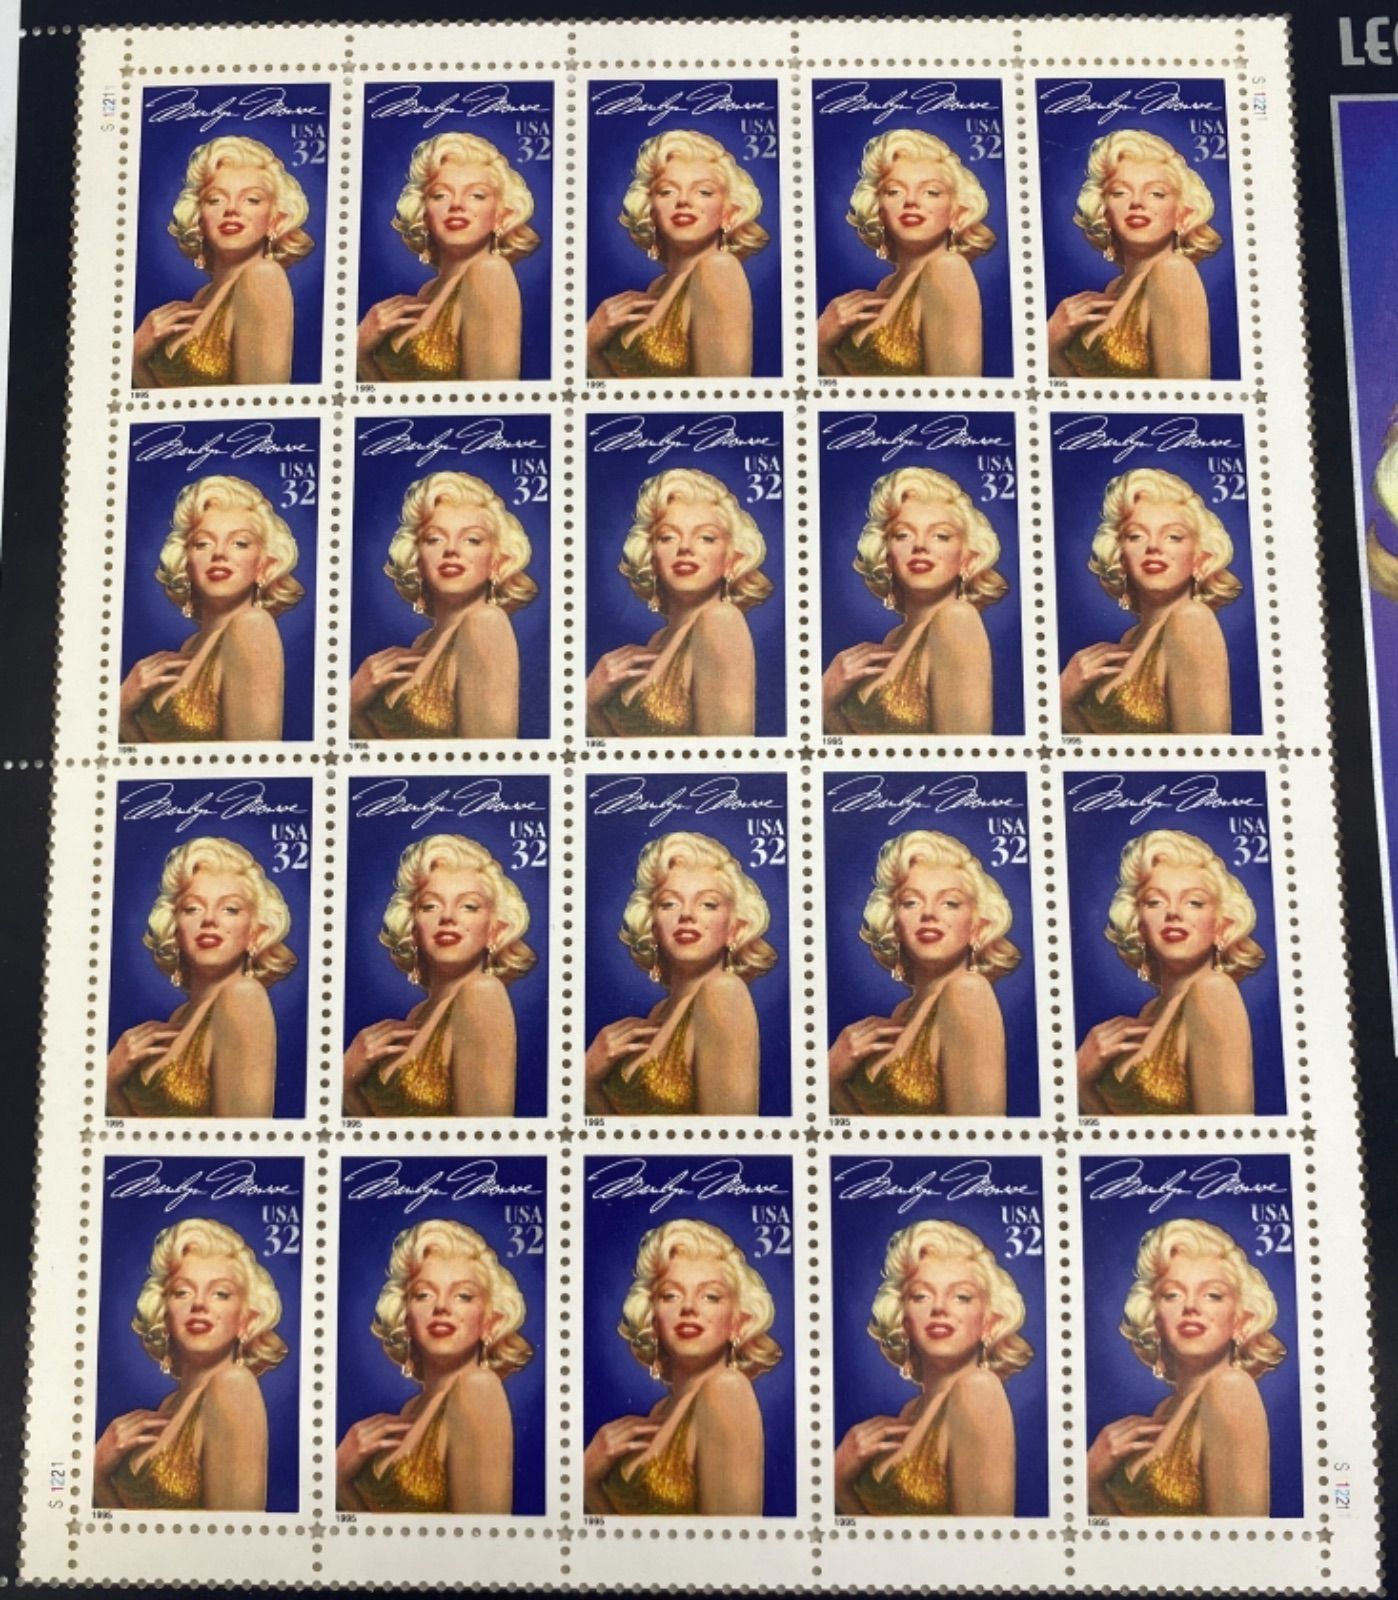 初売り マリリンモンロー Marilyn Monroe 32セント 海外切手シート